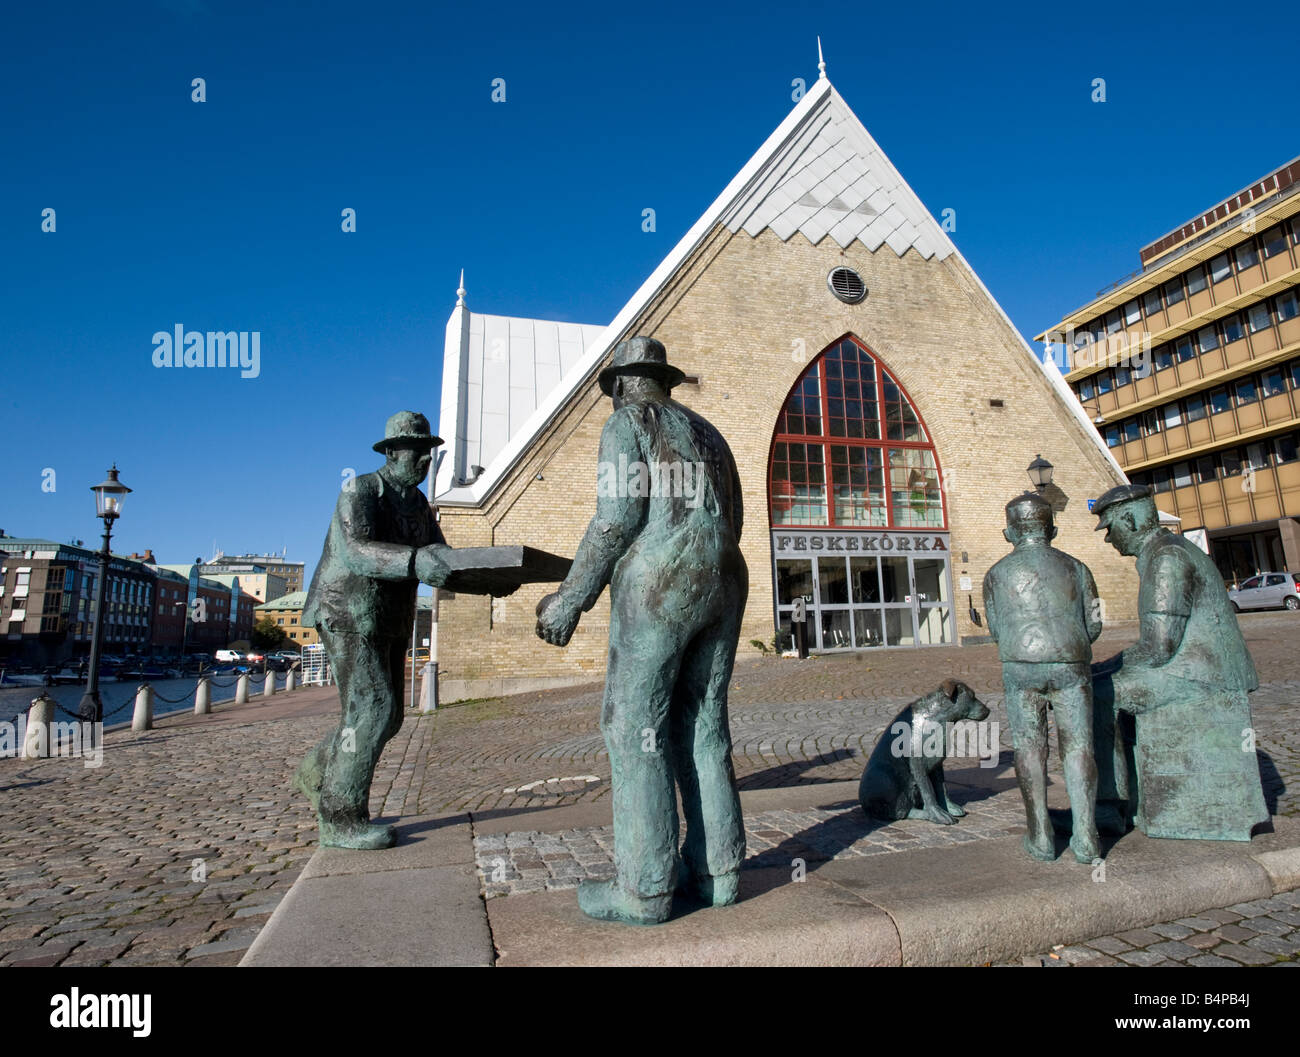 Sculpture en bronze des travailleurs du marché du poisson en dehors de la construction du marché du poisson Feskekorka dans le centre de Göteborg, en Suède Banque D'Images